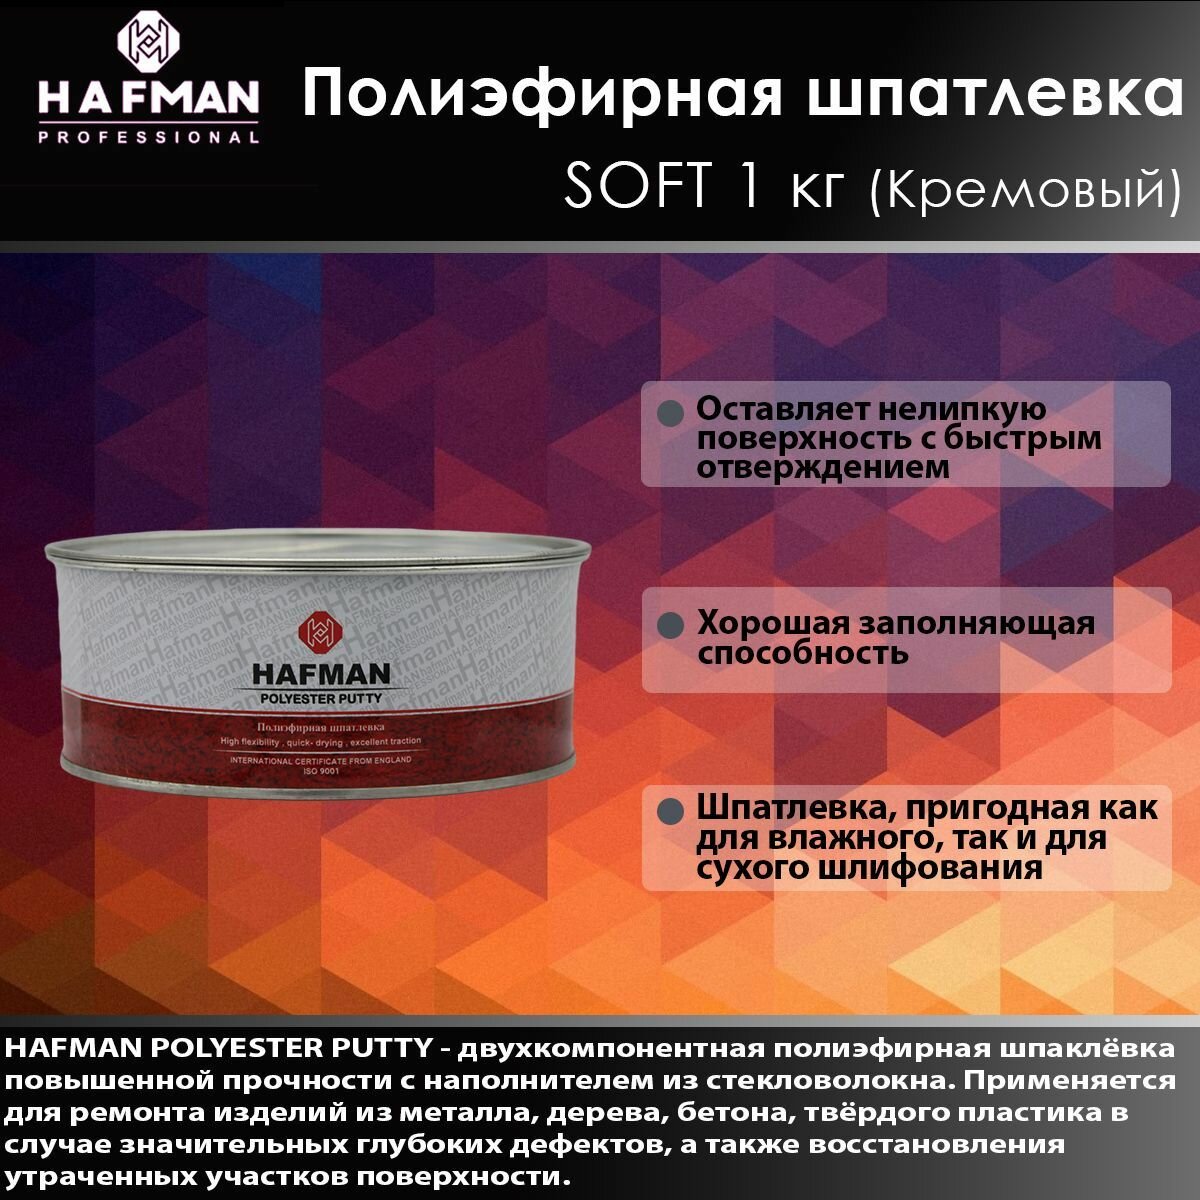 HAFMAN Полиэфирная шпатлевка SOFT 1 кг (Кремовый)